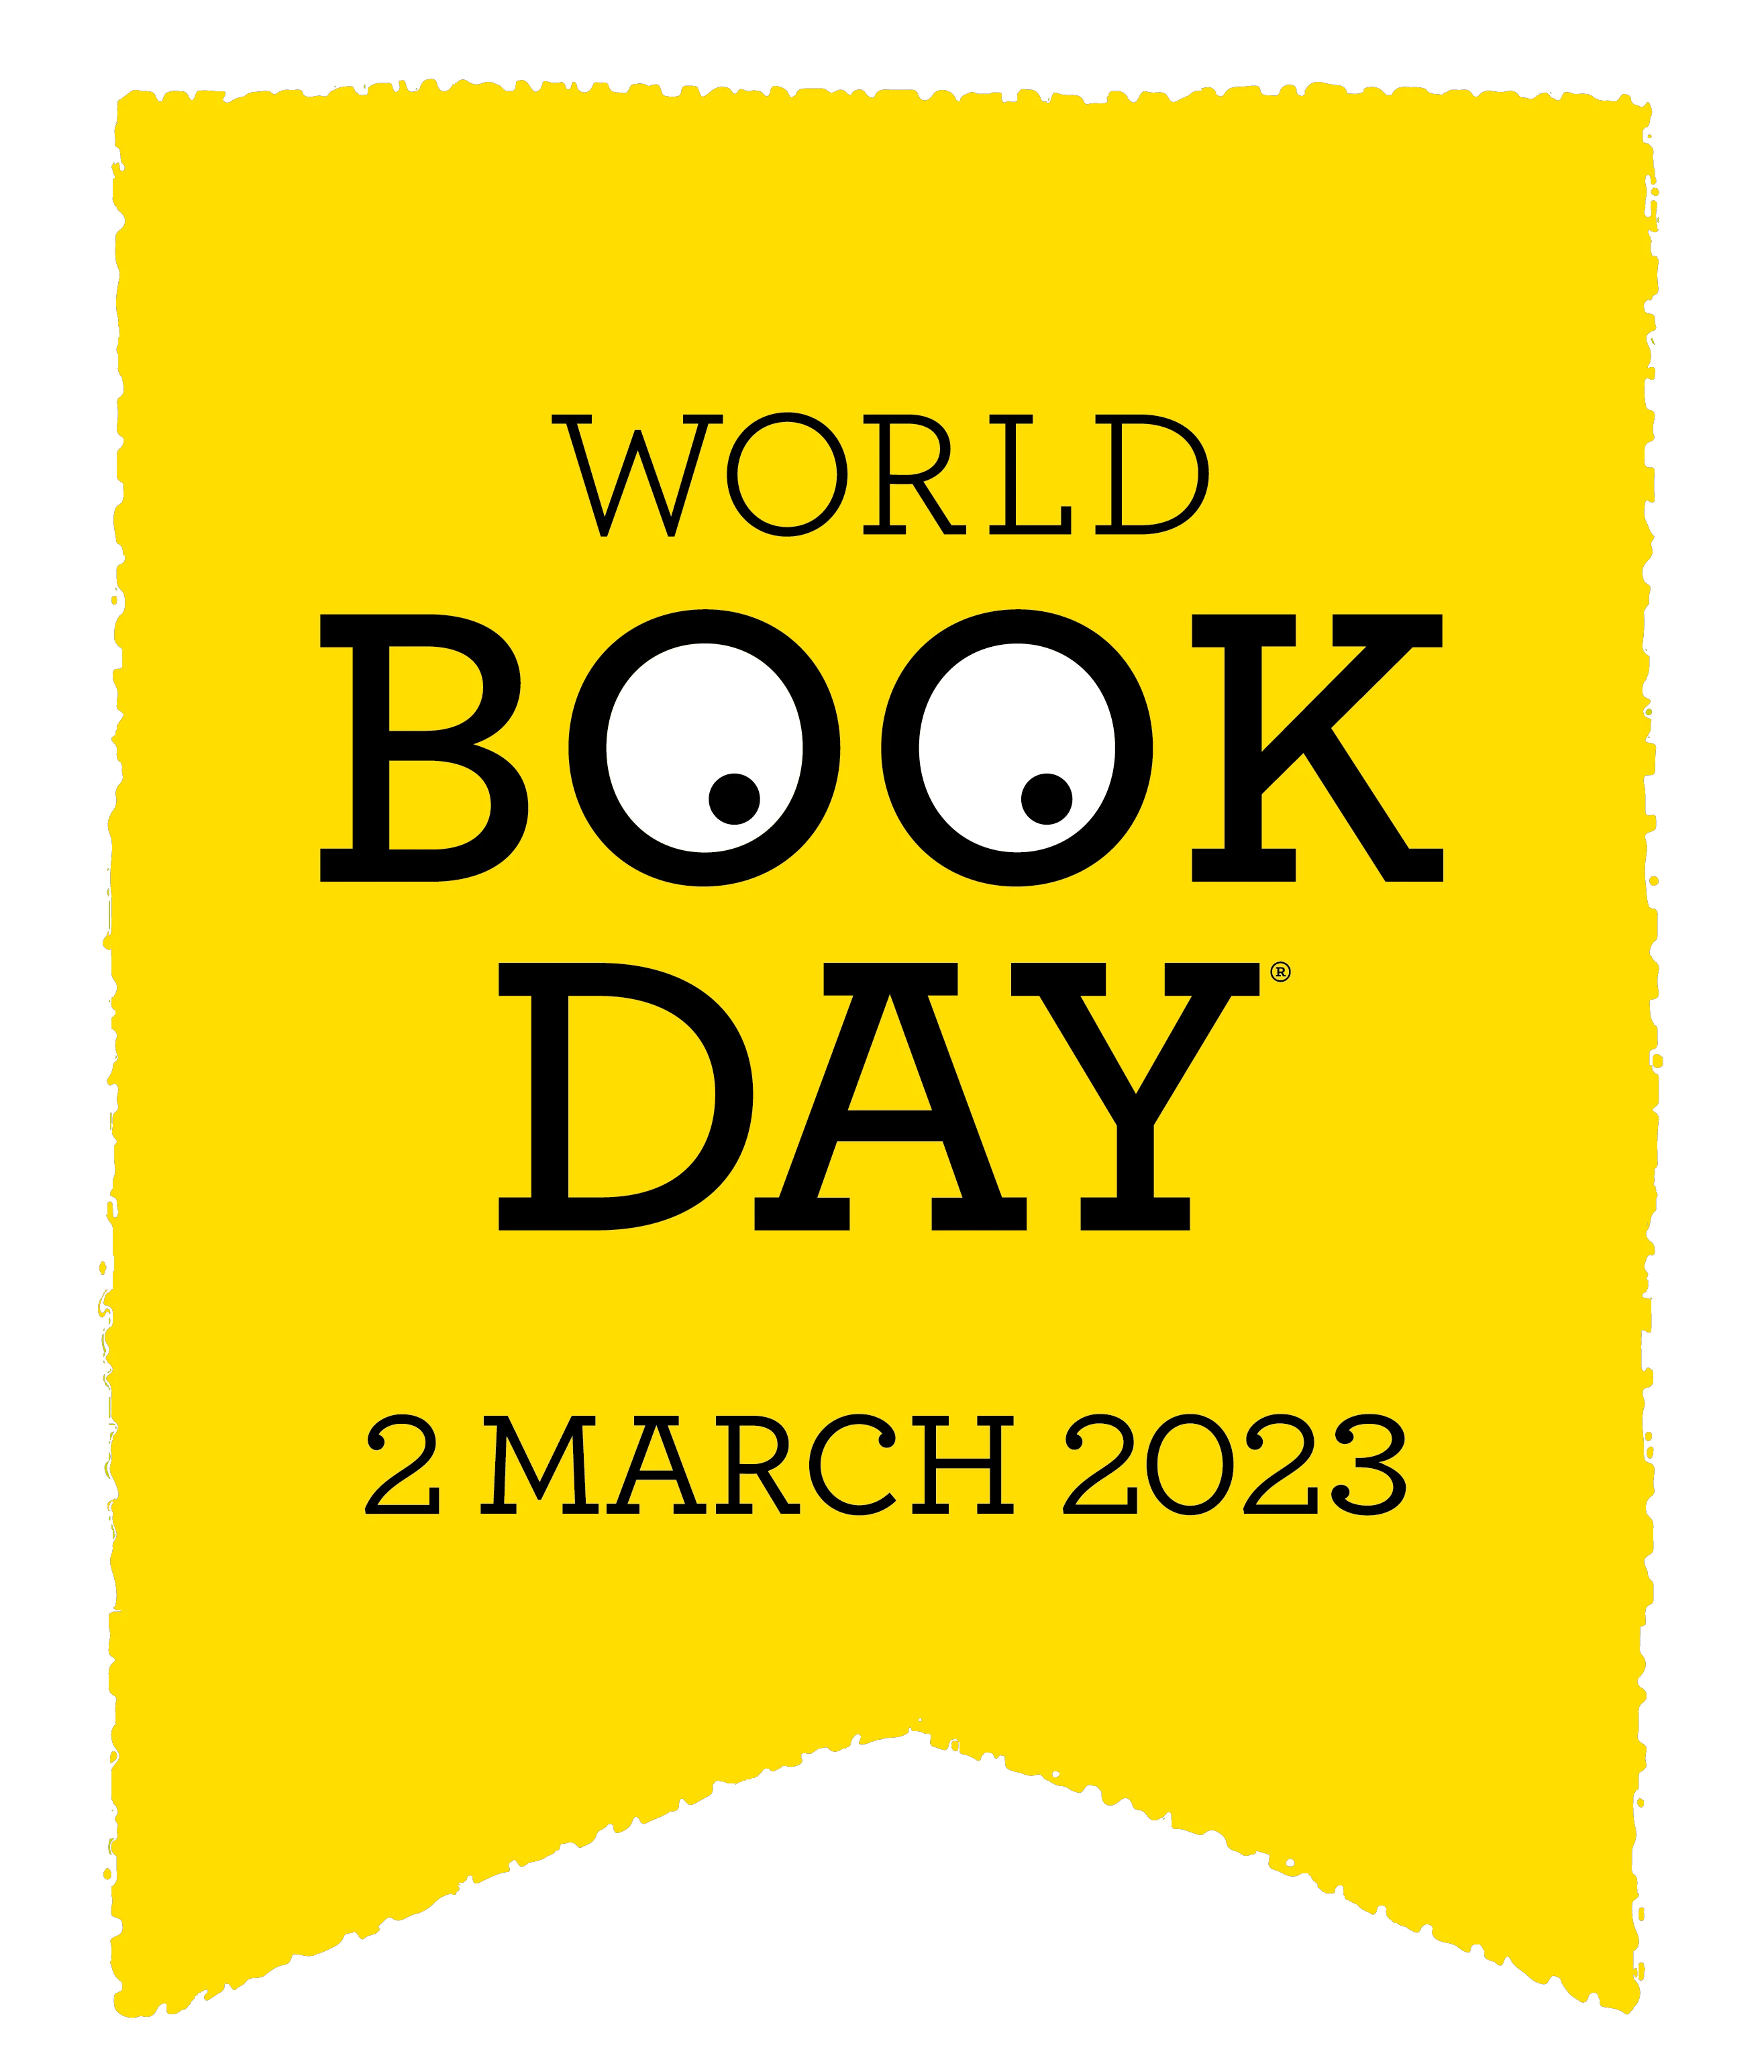  World Book Day